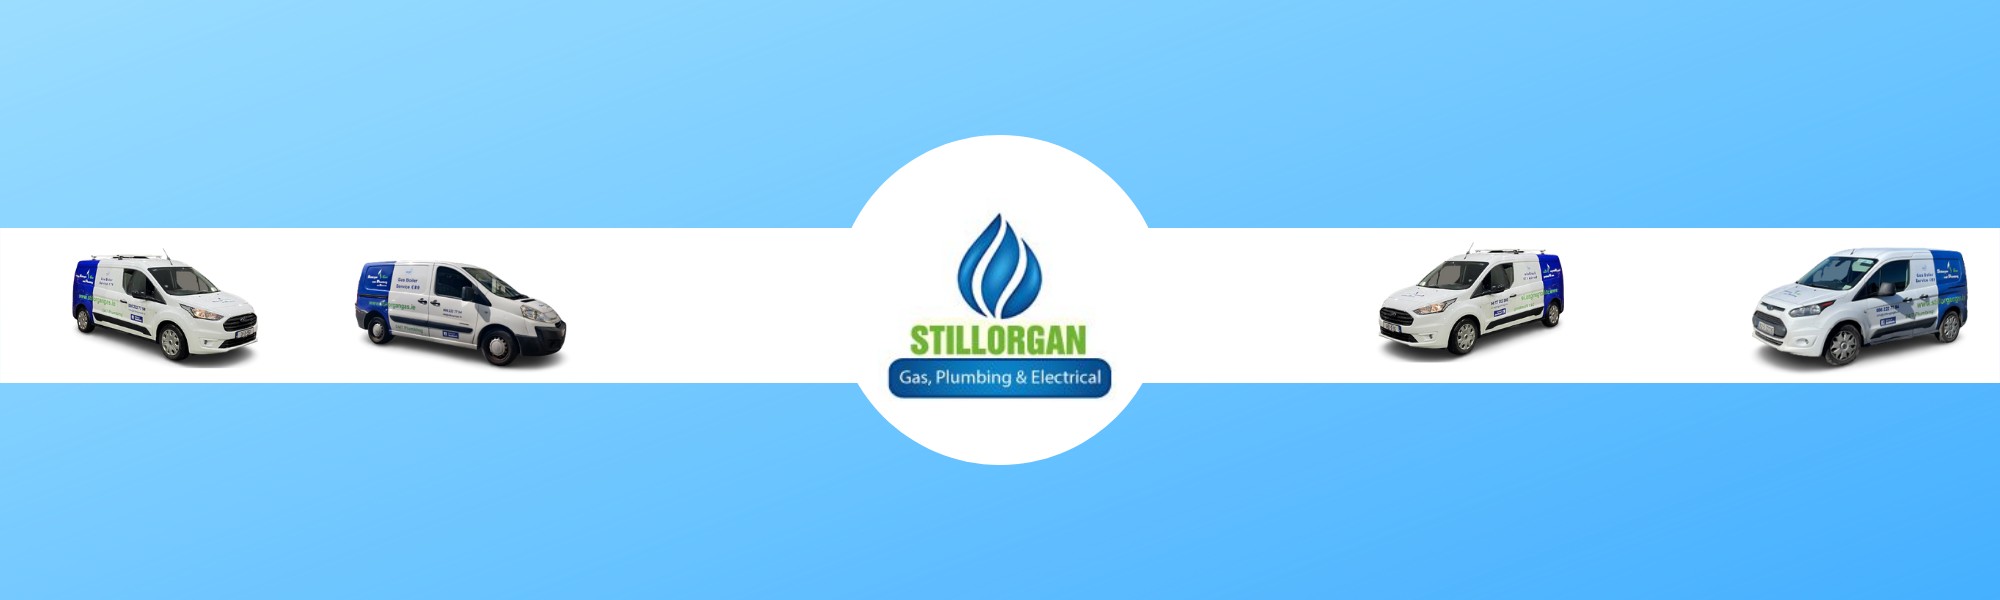 Stillorgan Gas & Plumbing